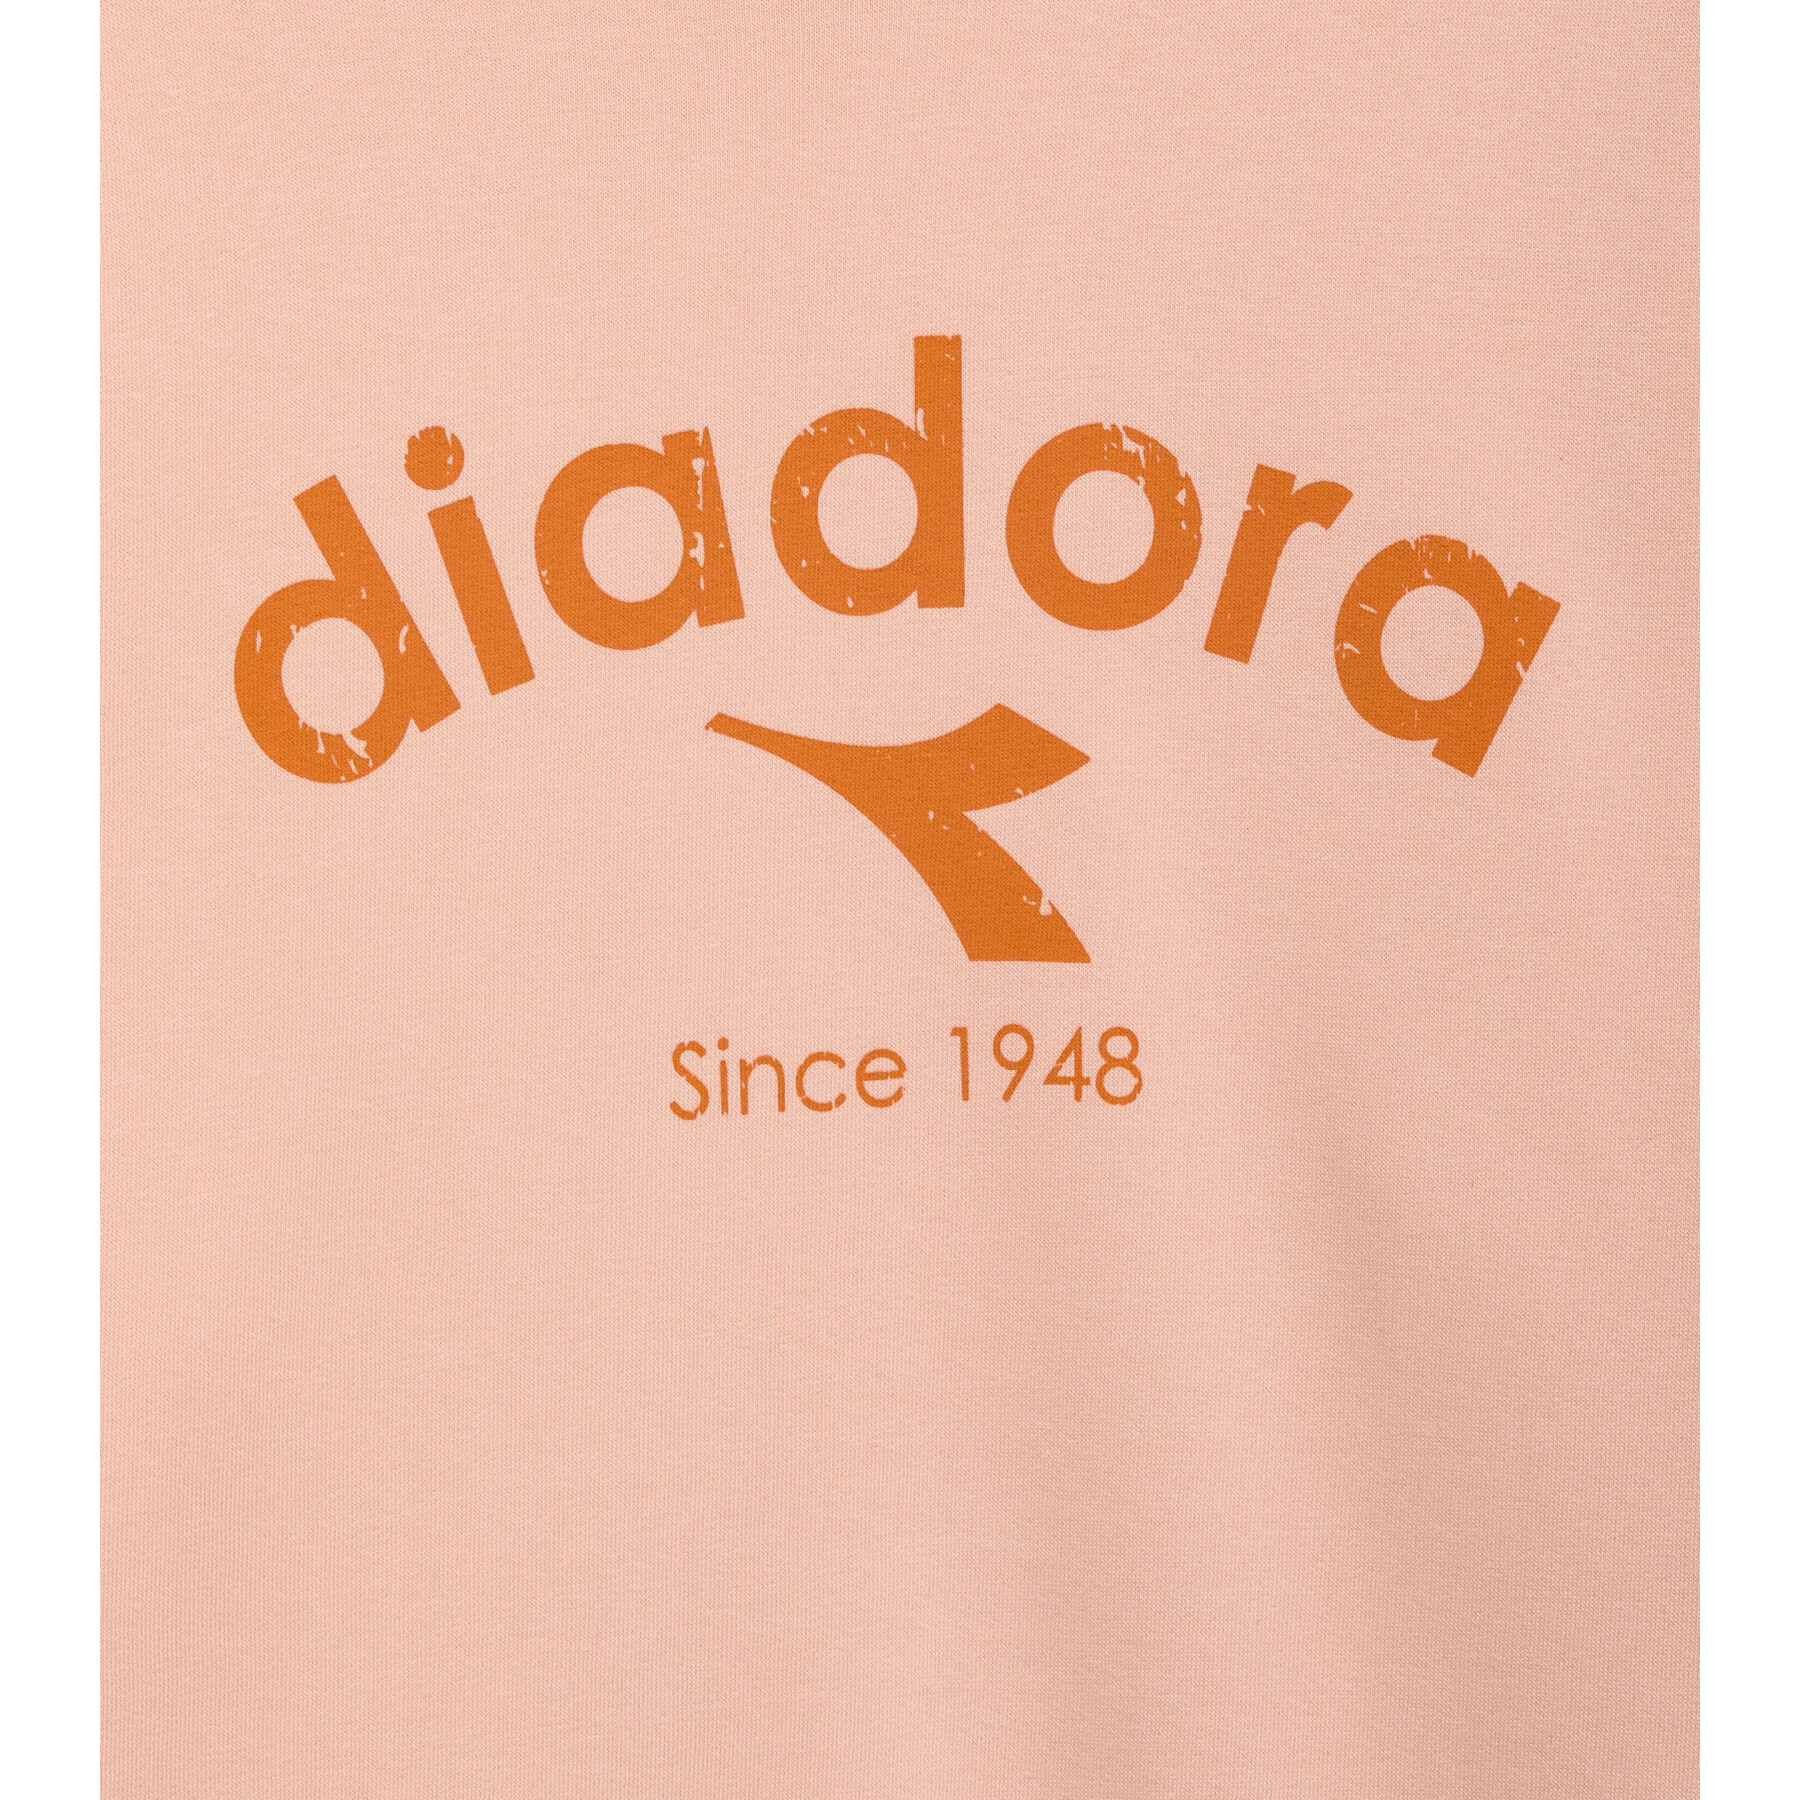 Sweatshirt Diadora Crew ATHL Logo